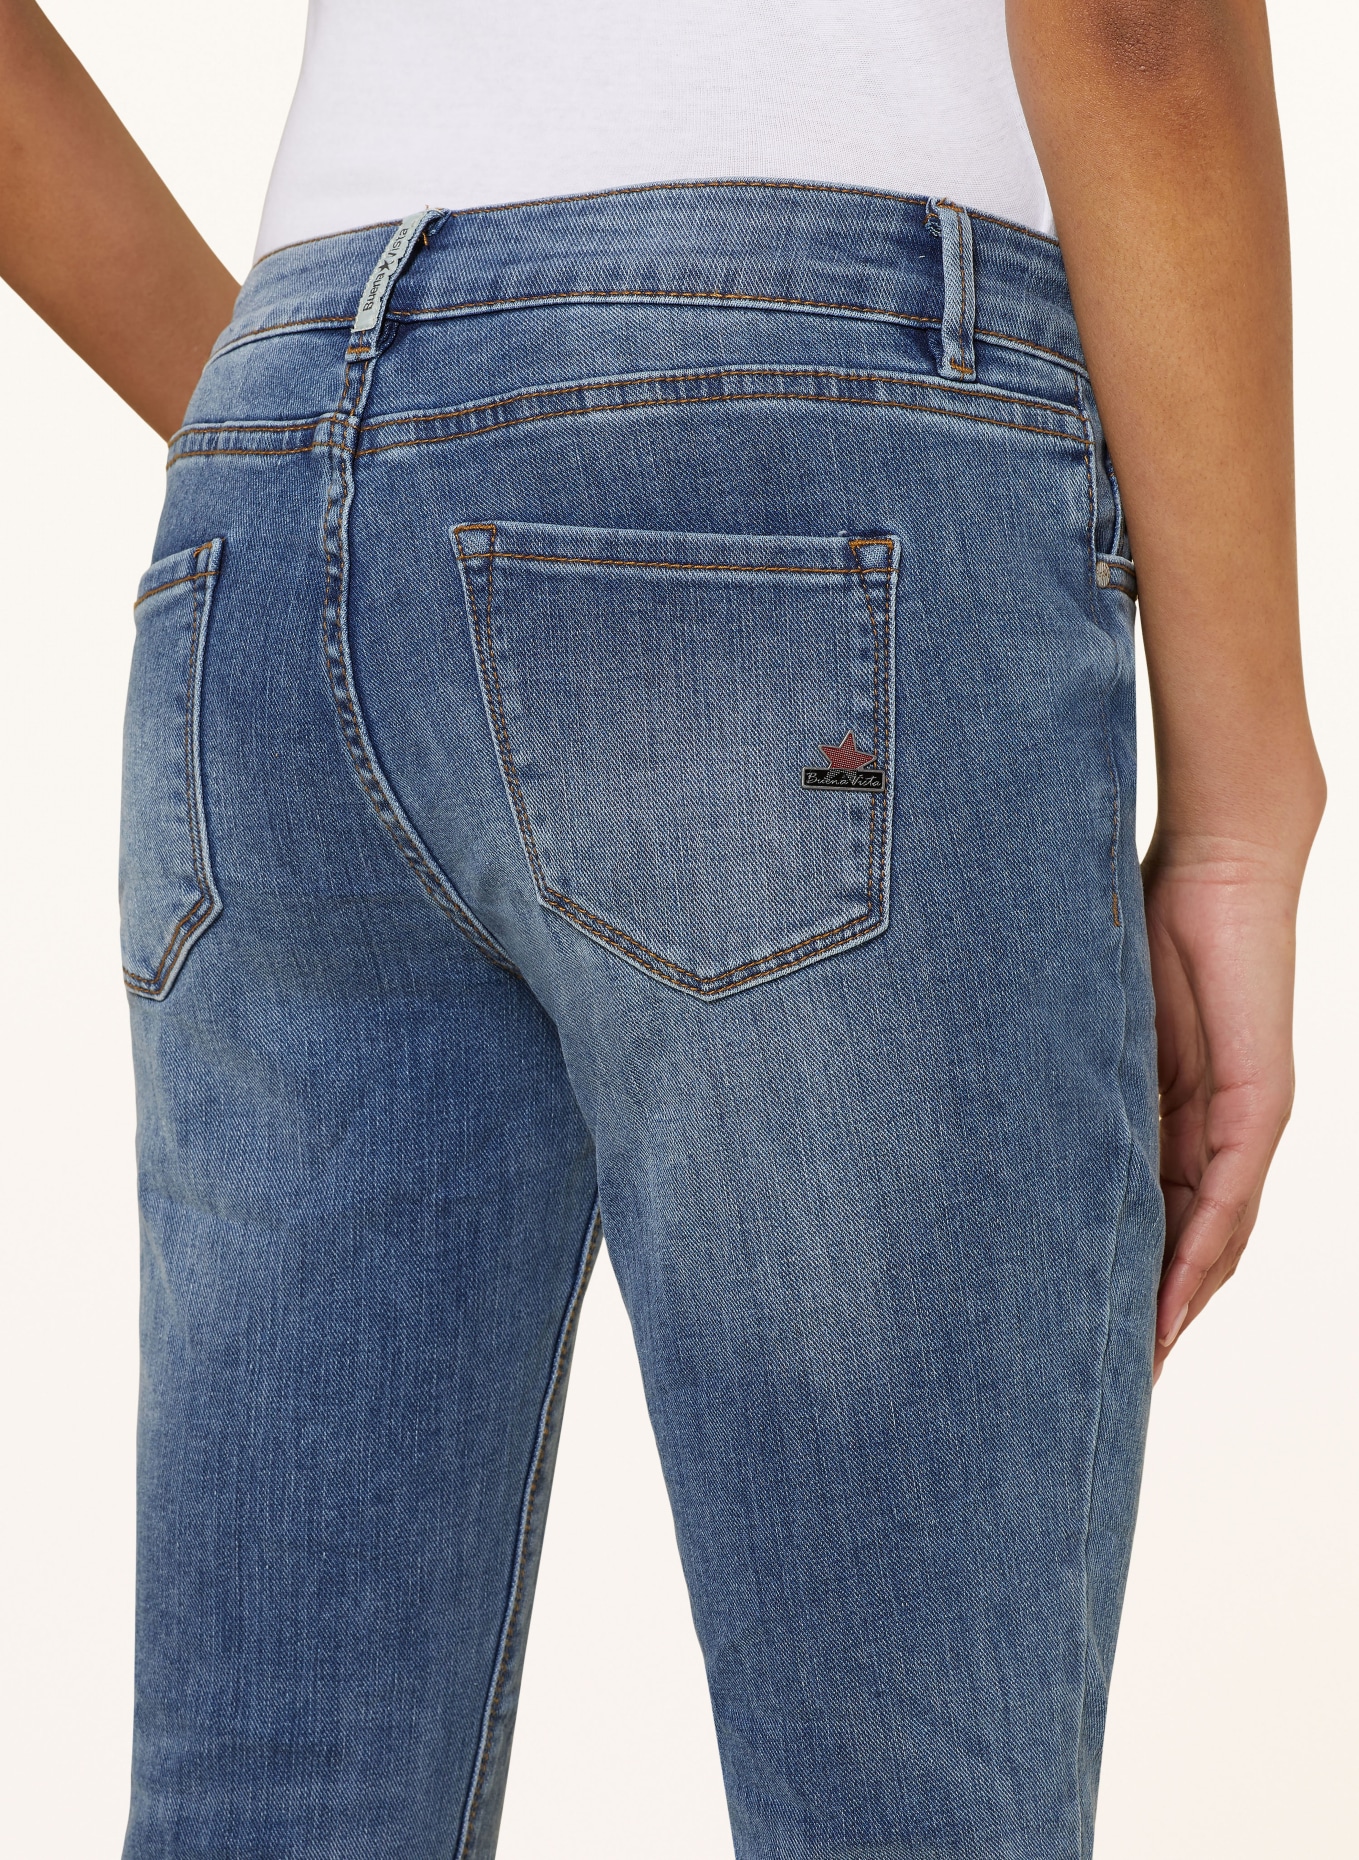 Buena Vista 7/8 jeans ITALY, Color: 5570 cyan denim (Image 5)